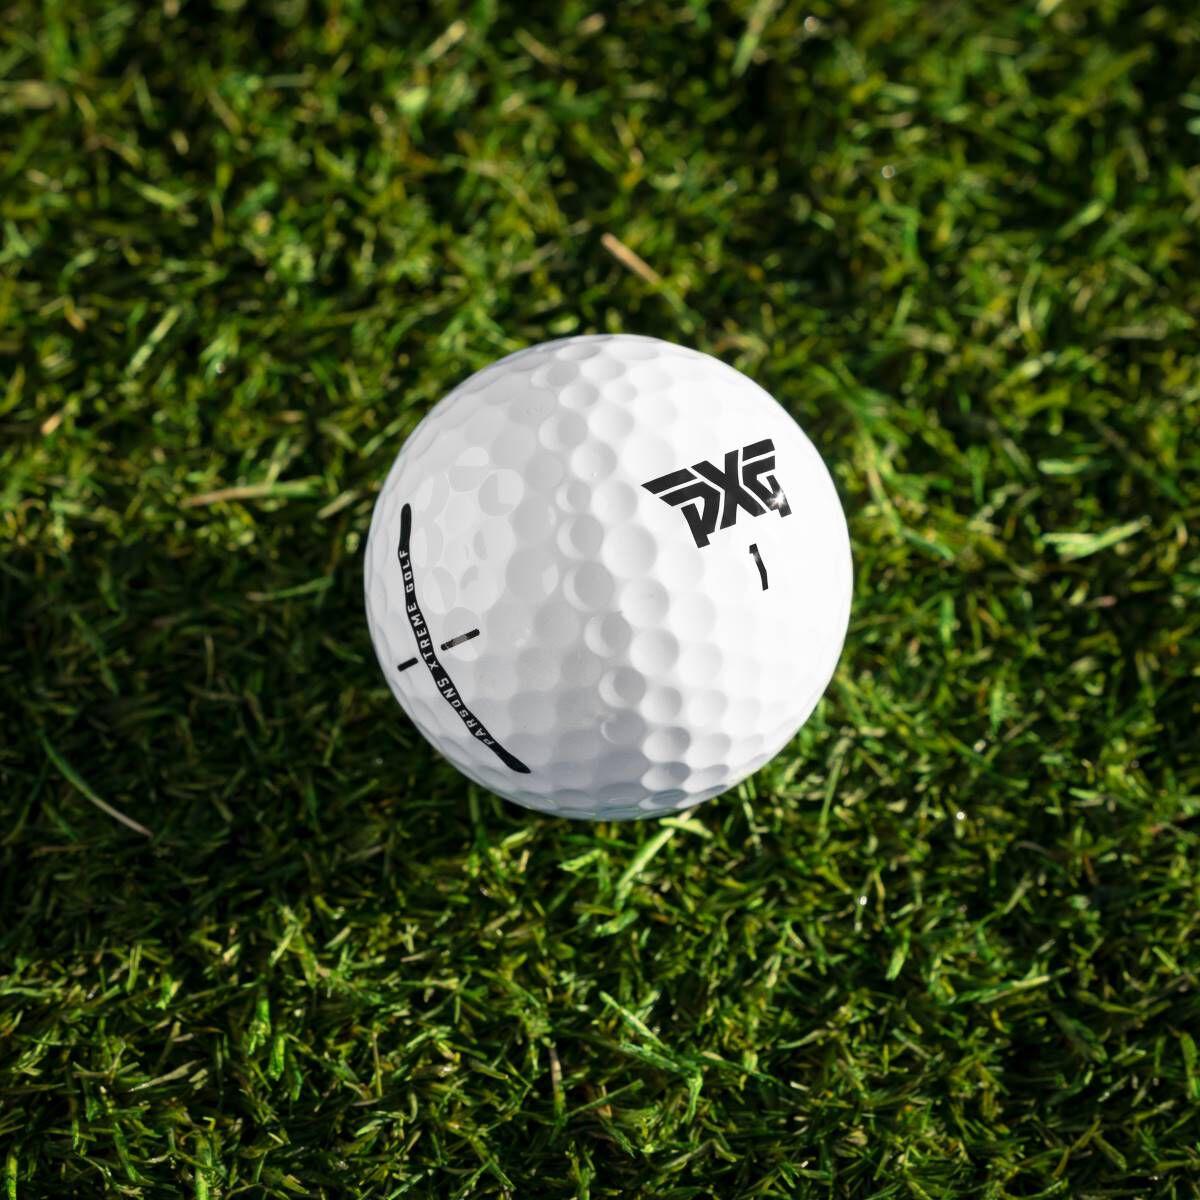 （36個入）PXG Xtreme Premium Golf Balls